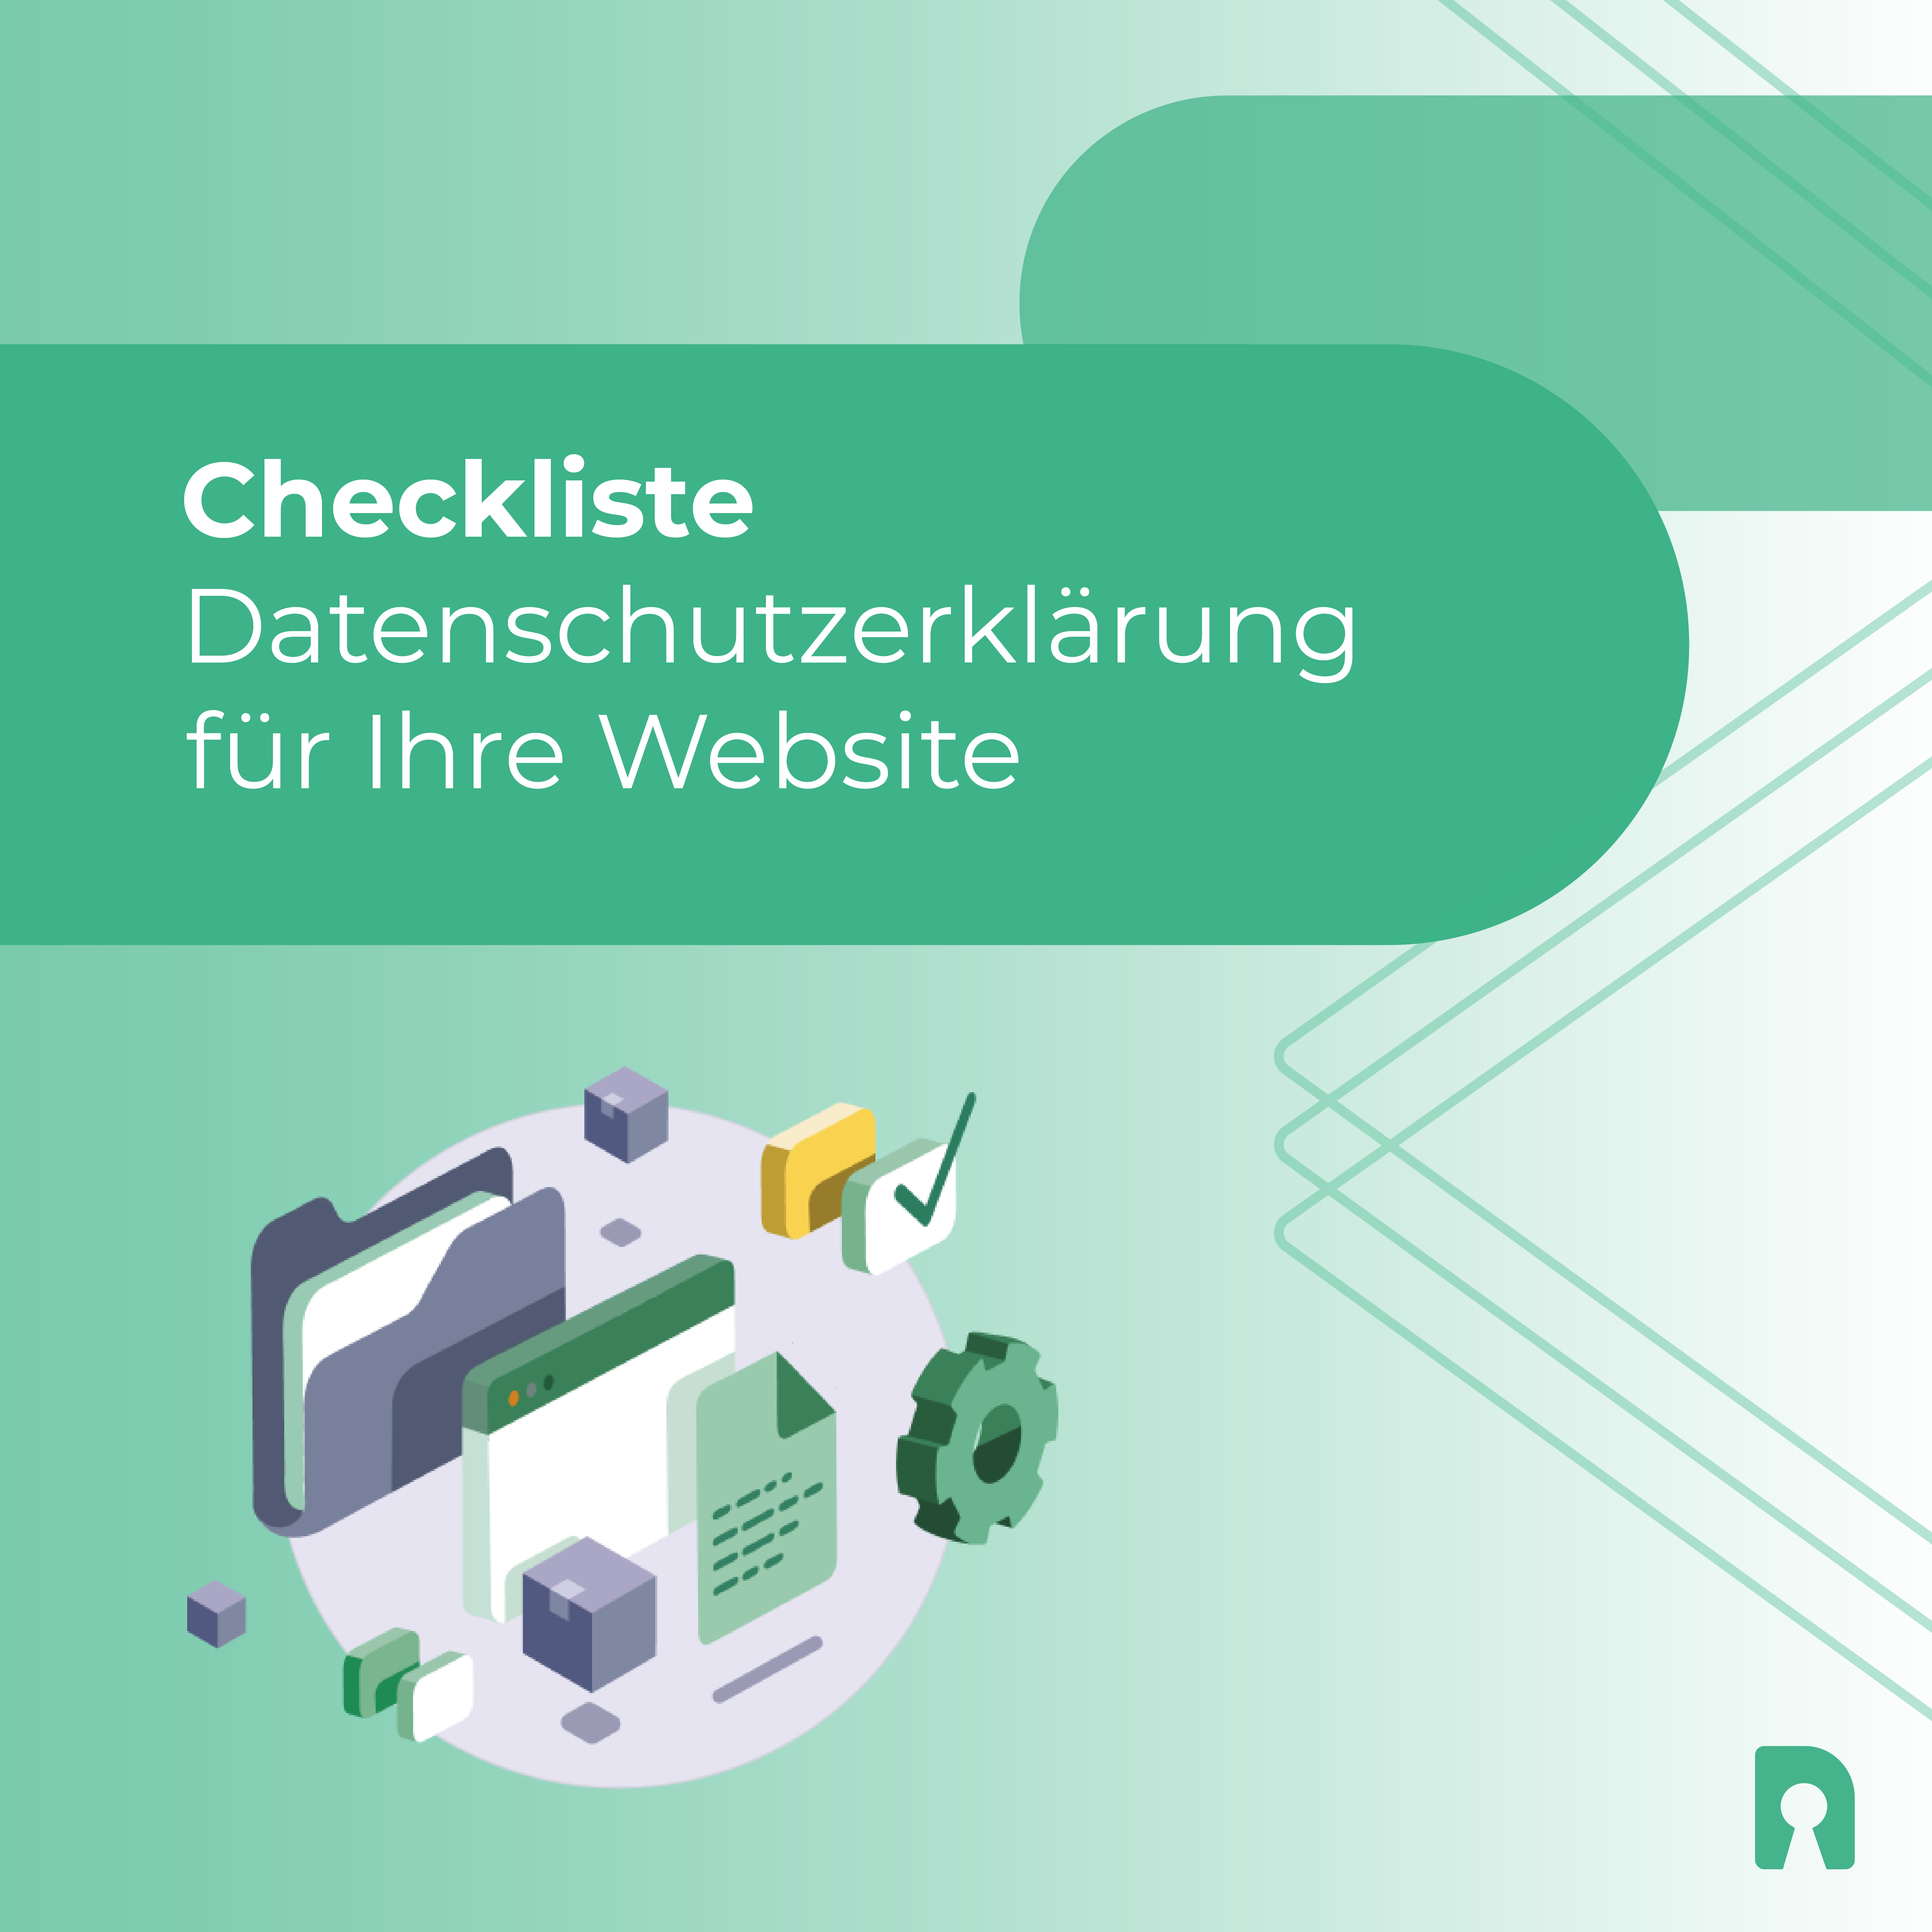 Datenschutzerklärung Website - Checkliste